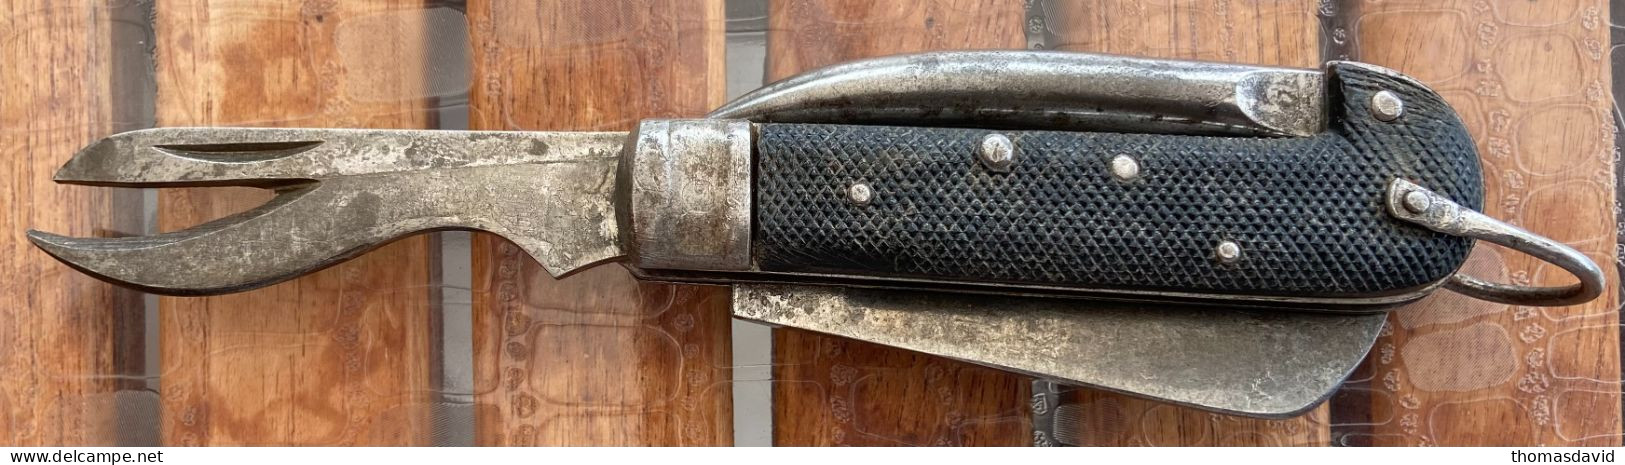 Couteau de poche réglementaire du soldat  Italien 2ème guerre mondiale. ww2. 39-45. Militaire.